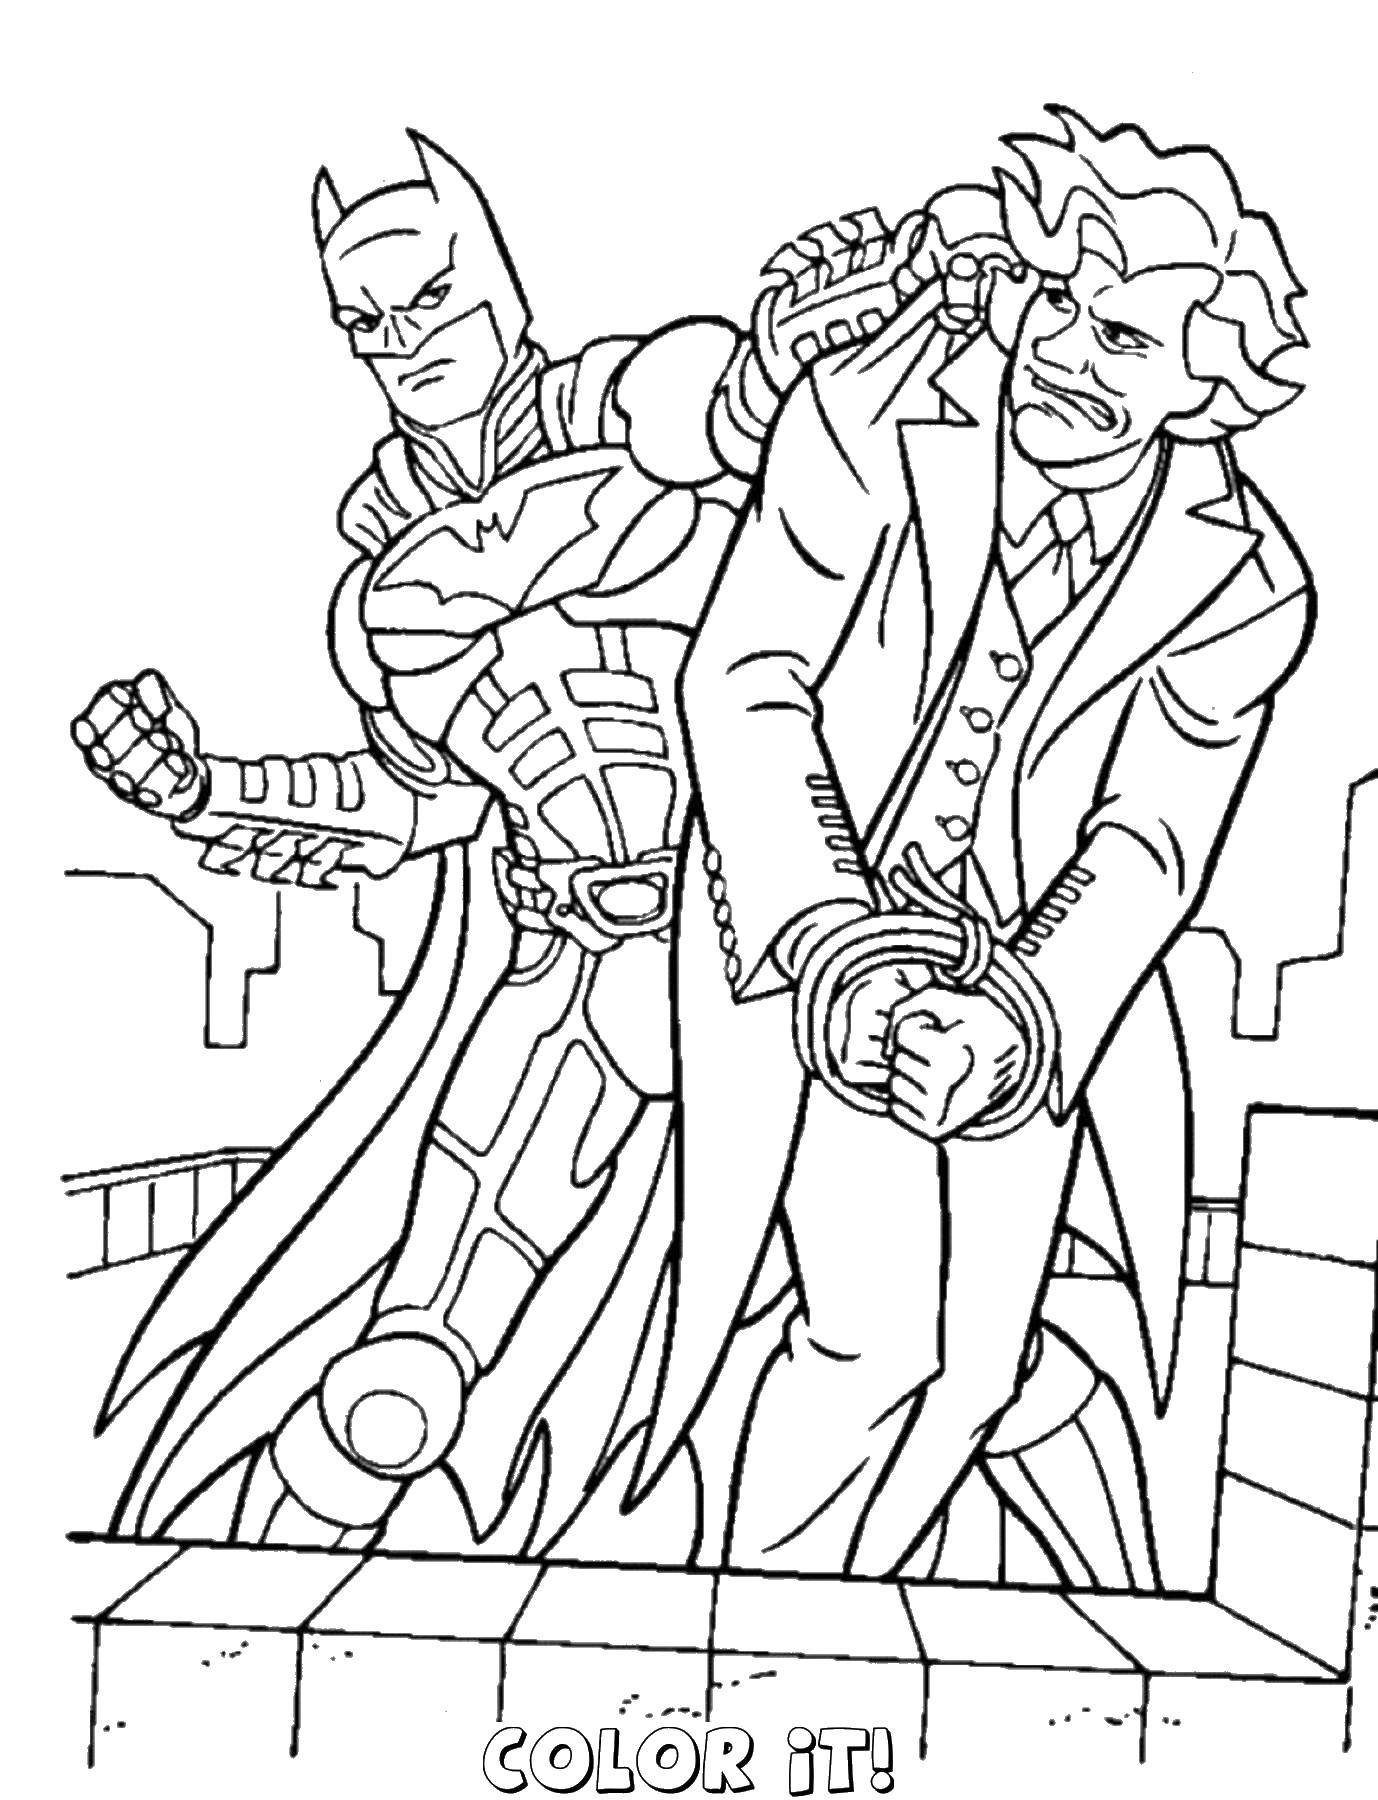 Опис: розмальовки  Бетмен проти джокера.. Категорія: Комікси. Теги:  Комікси, Бетмен.